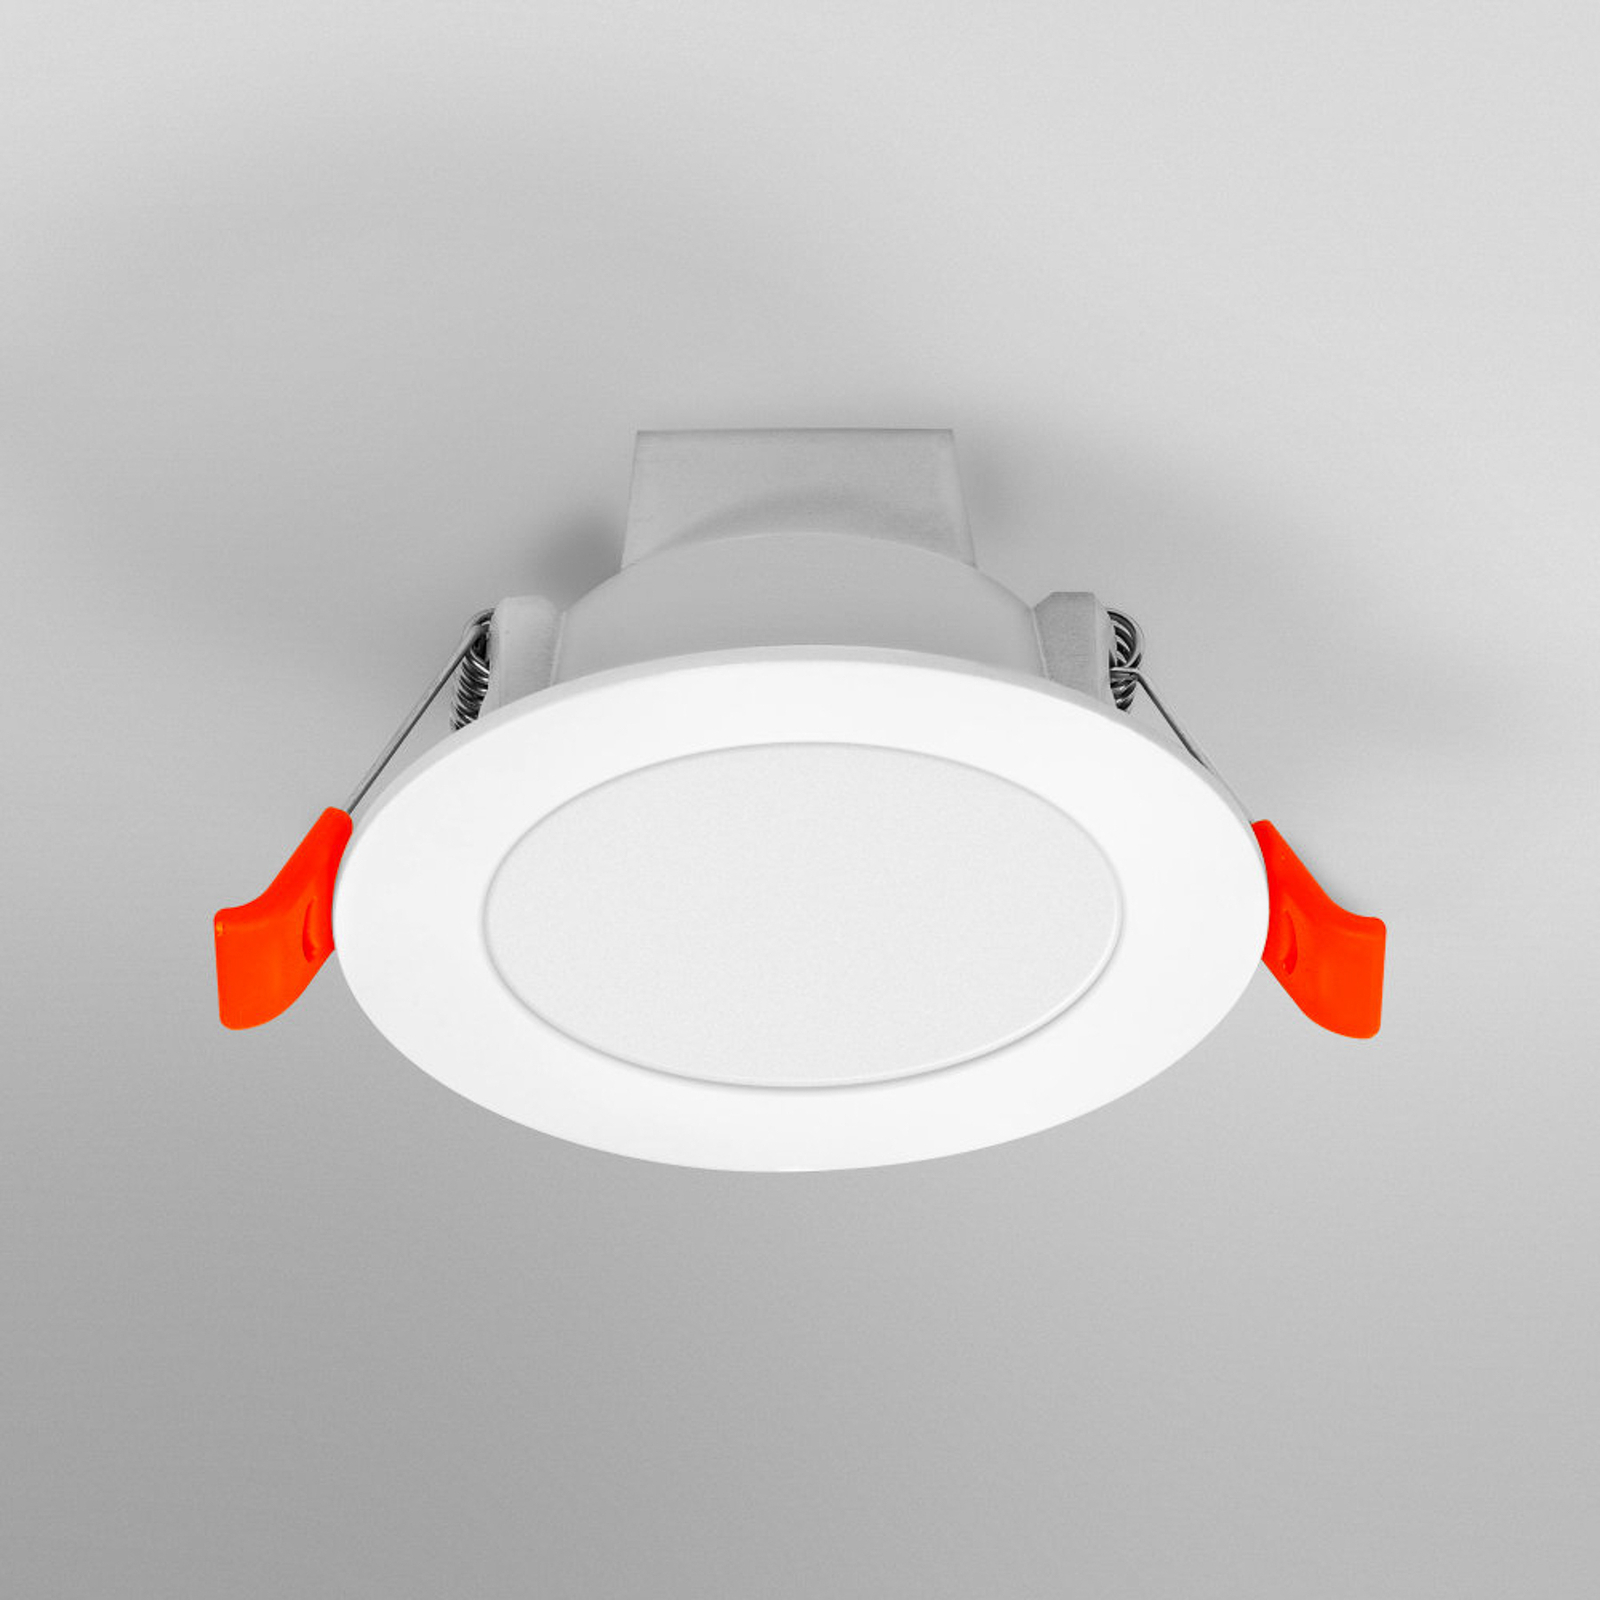 LEDVANCE SMART+ WiFi Spot LED-Einbaustrahler, 100°